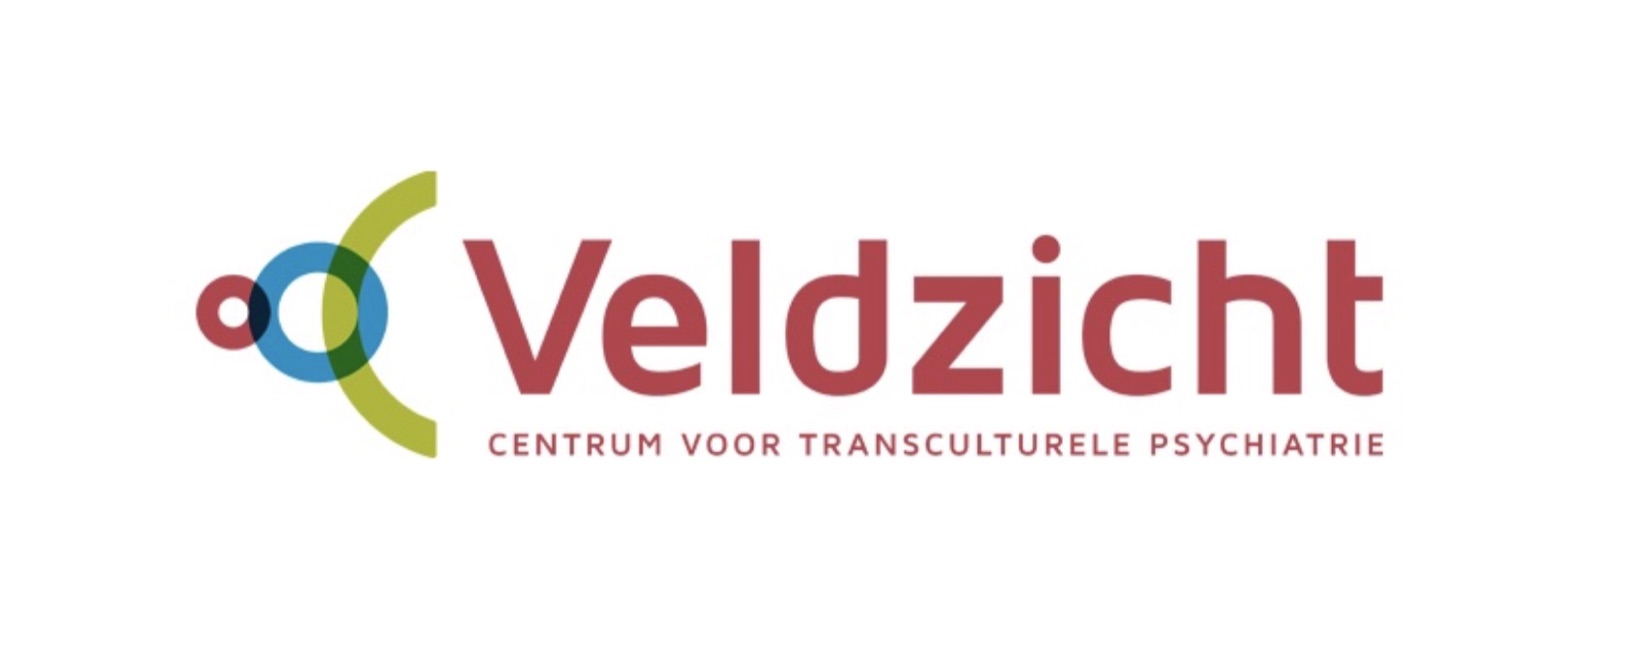 Logo de case herpositionering tbs kliniek Veldzicht